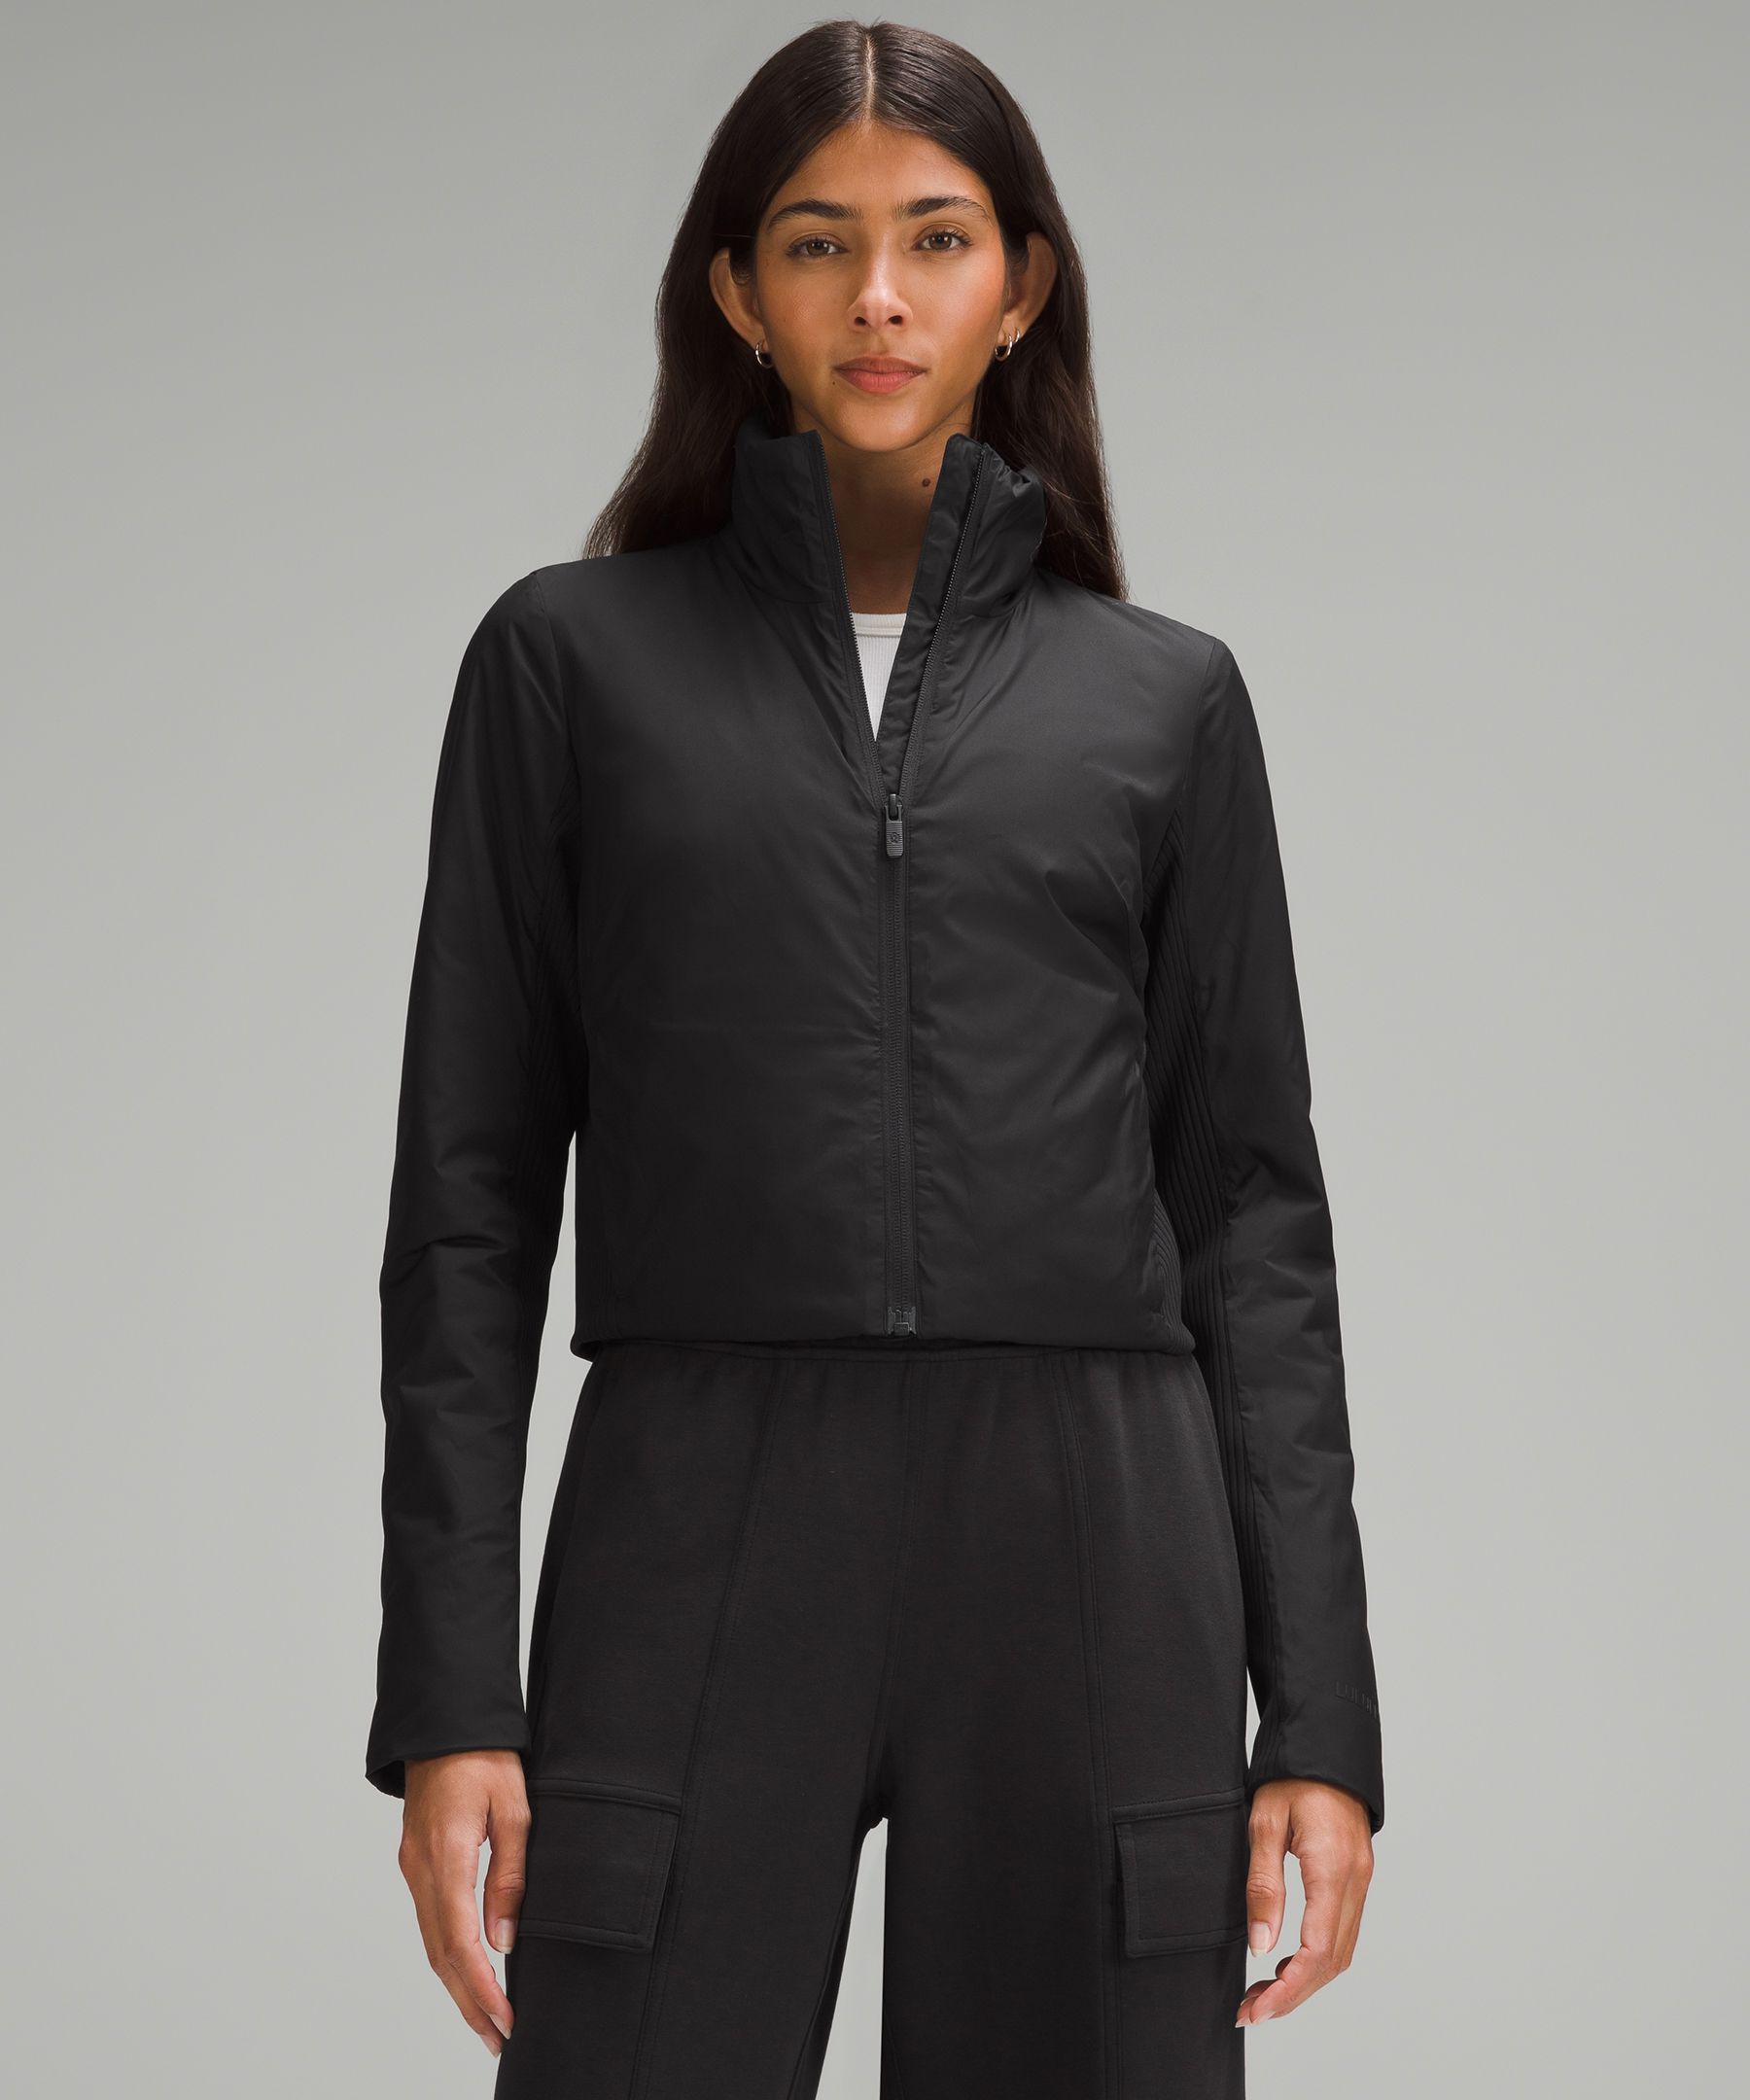 lululemon athletica, Jackets & Coats, Euc Lululemon Grey Define Jacket  Size